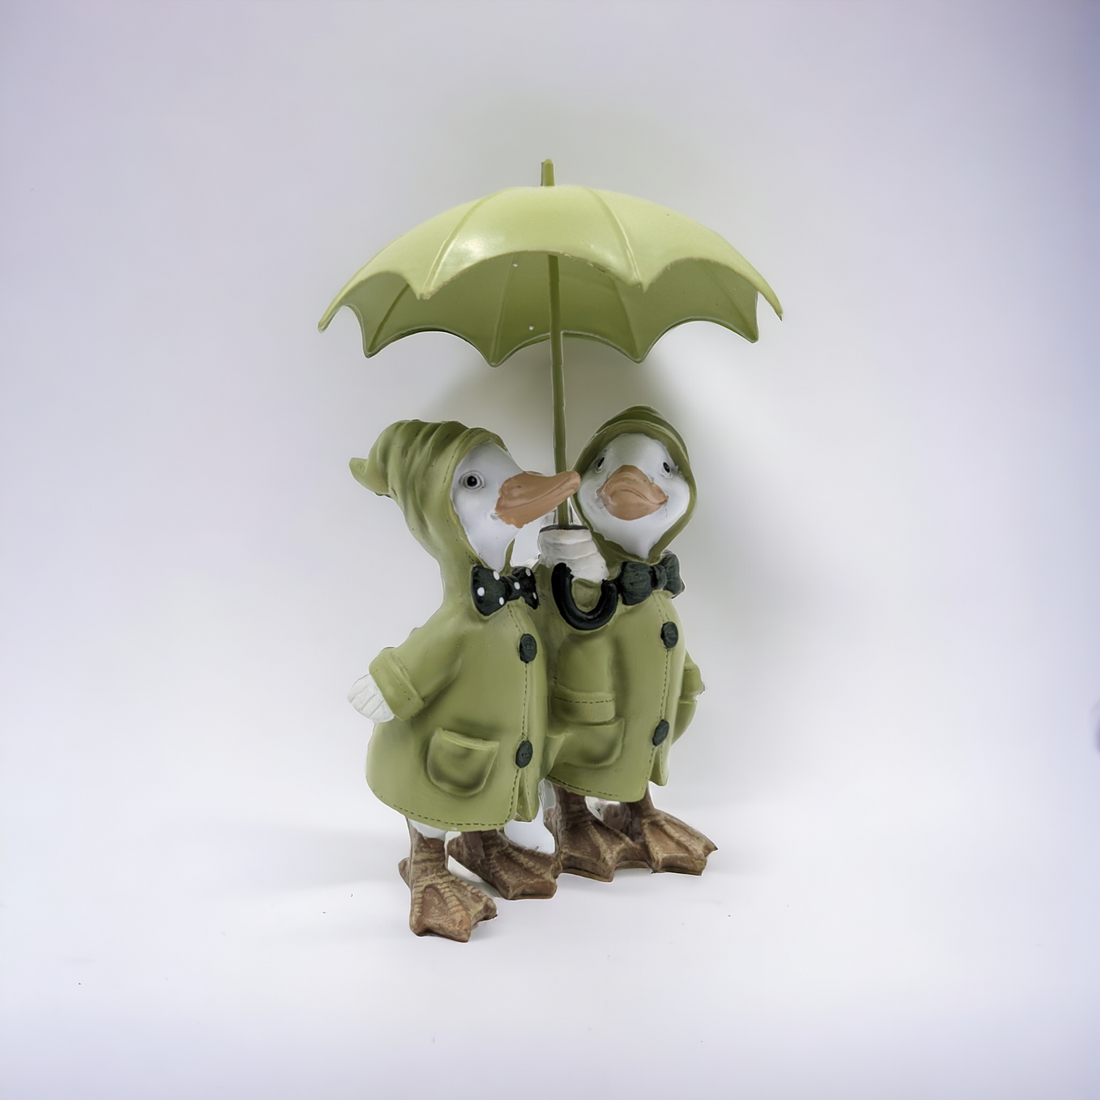 Rainy Ducks with Umbrella